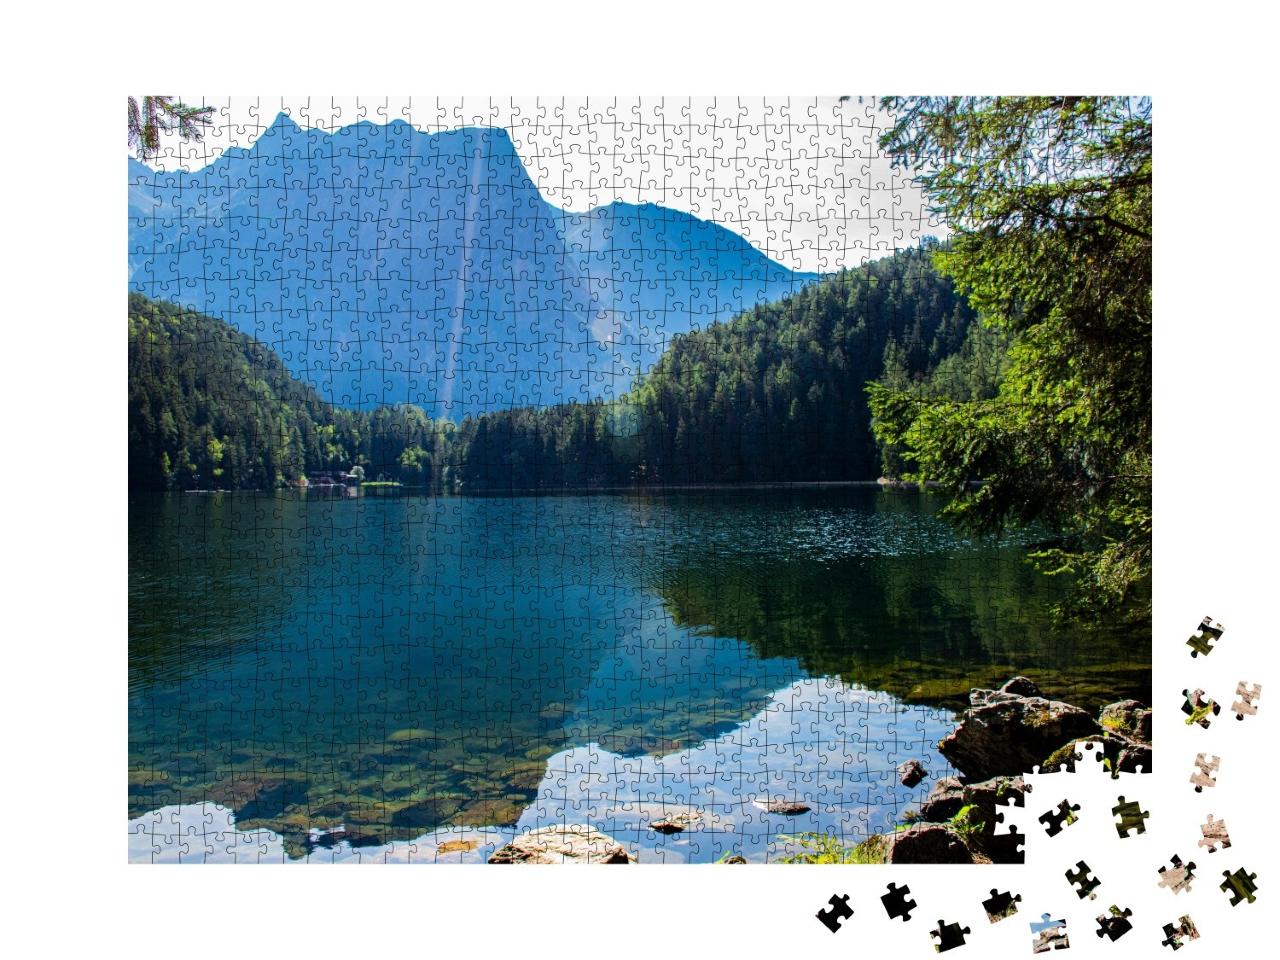 Puzzle de 1000 pièces « Lac de Piburg dans l'Ötztal »